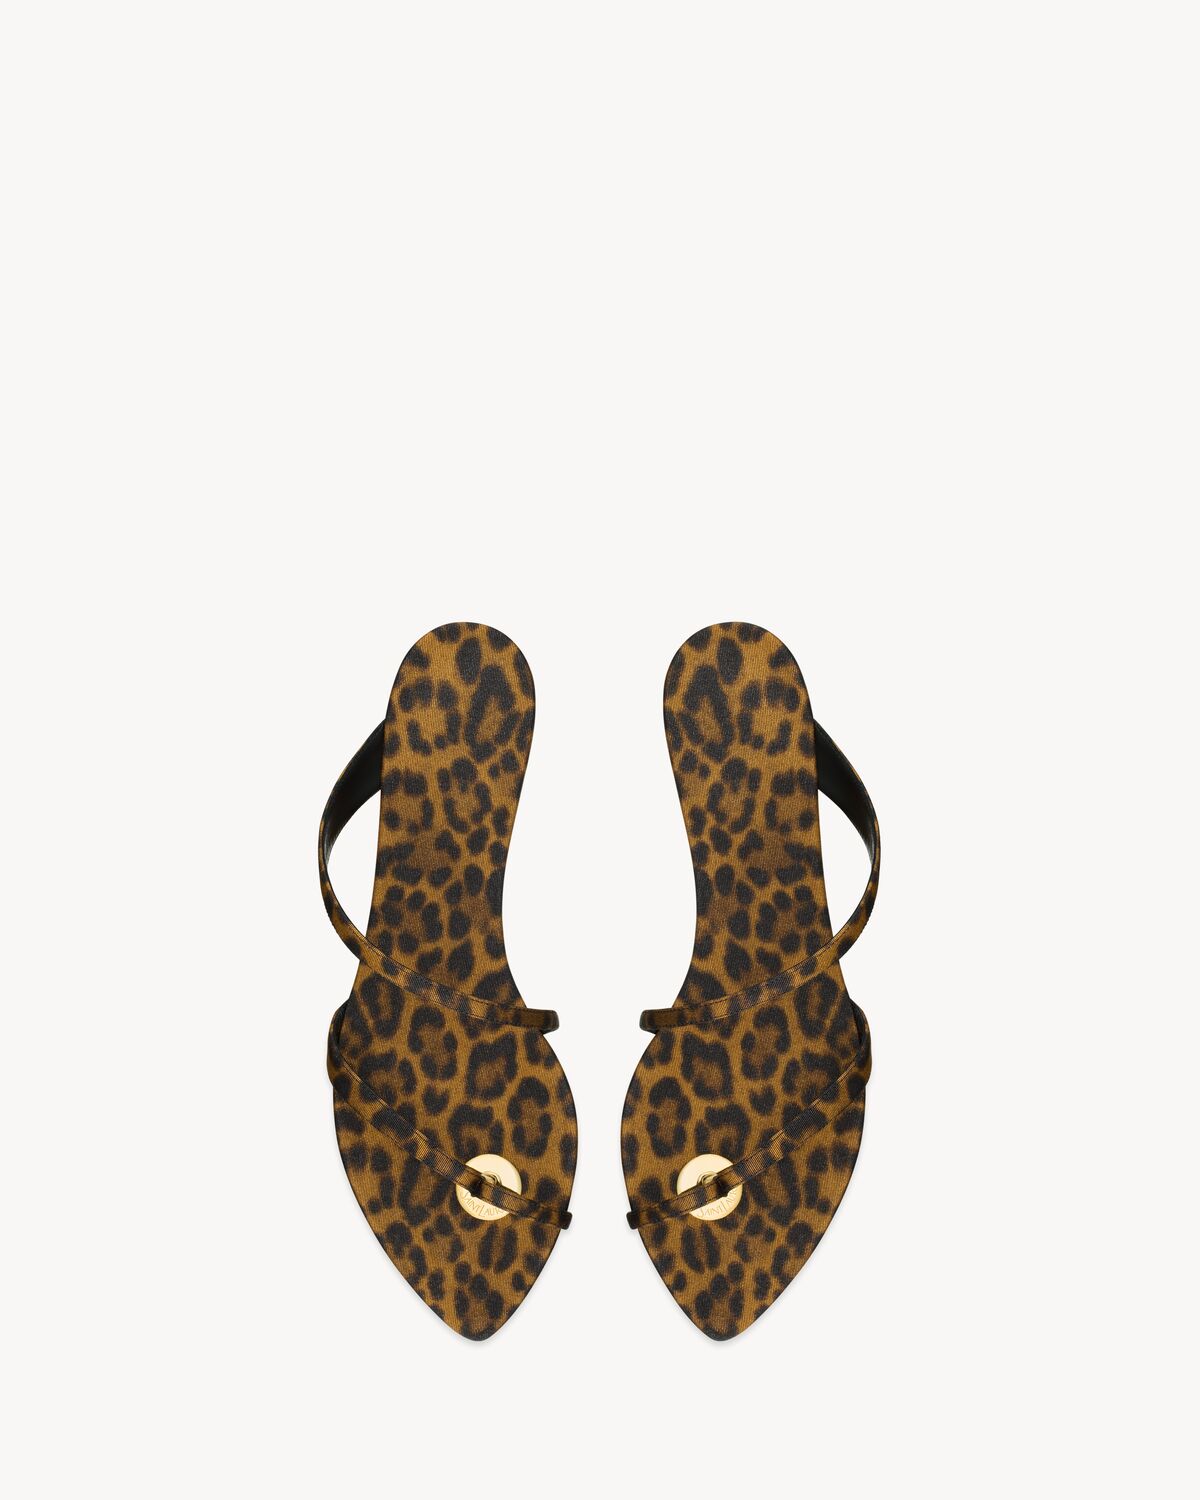 TANGER slides in leopard grosgrain